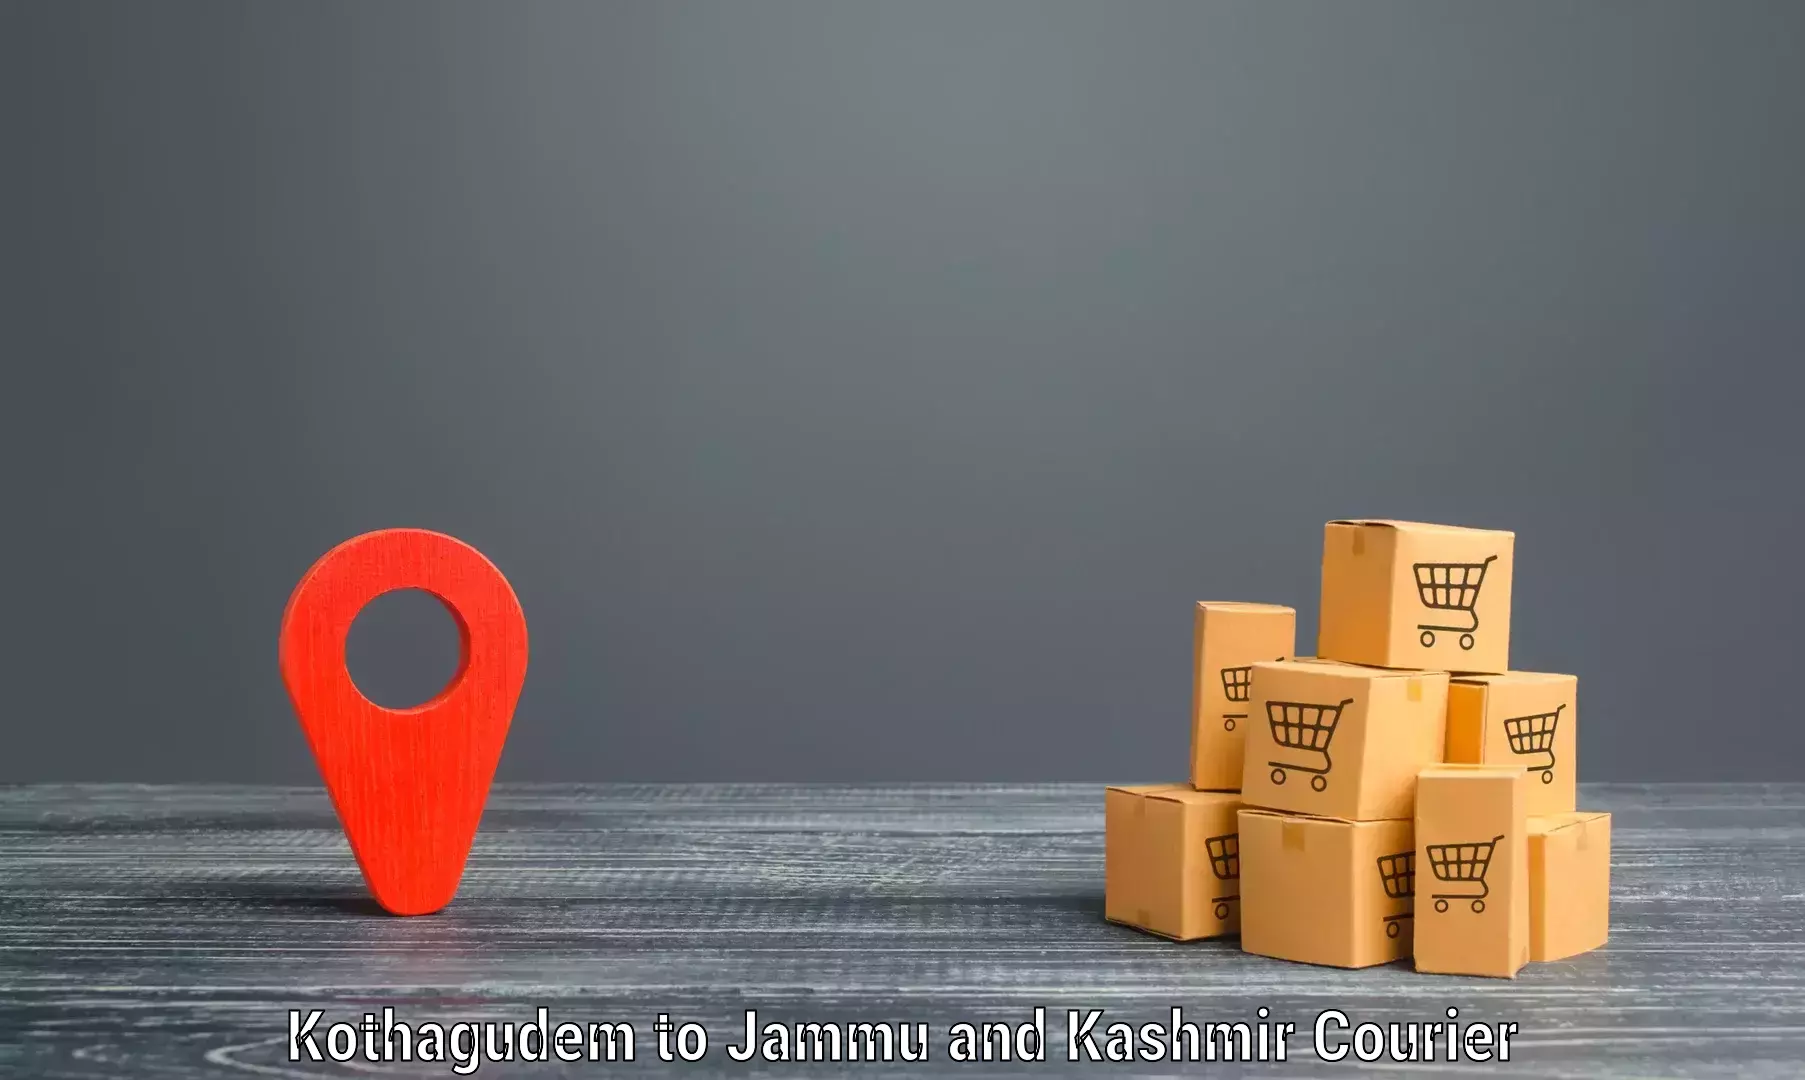 Courier service innovation Kothagudem to Kargil